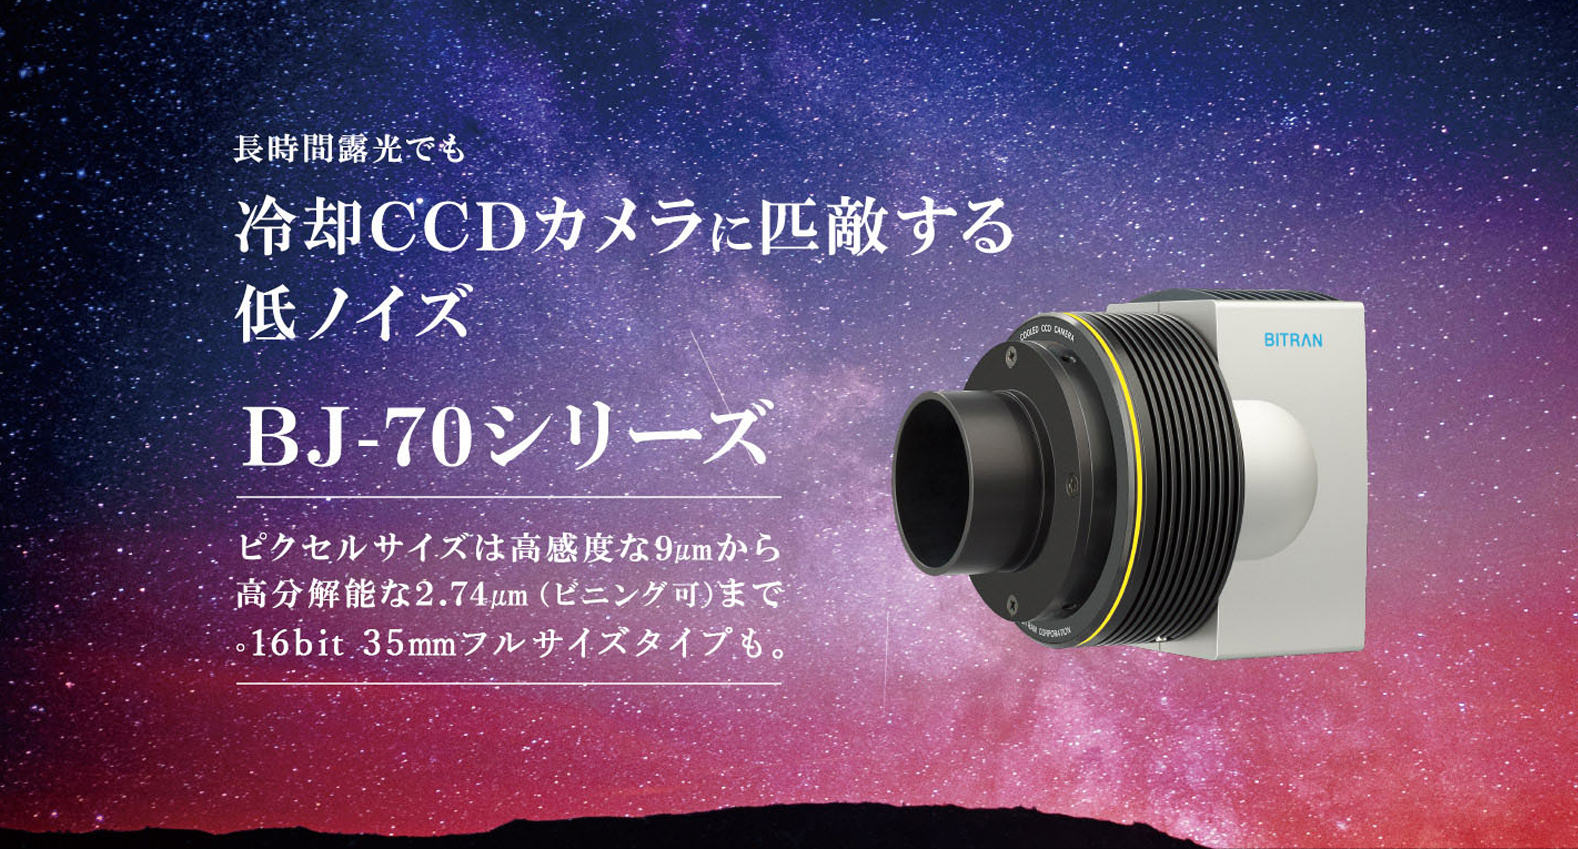 日本の宇宙開発・天文学を支える技術者集団 － ビットラン株式会社